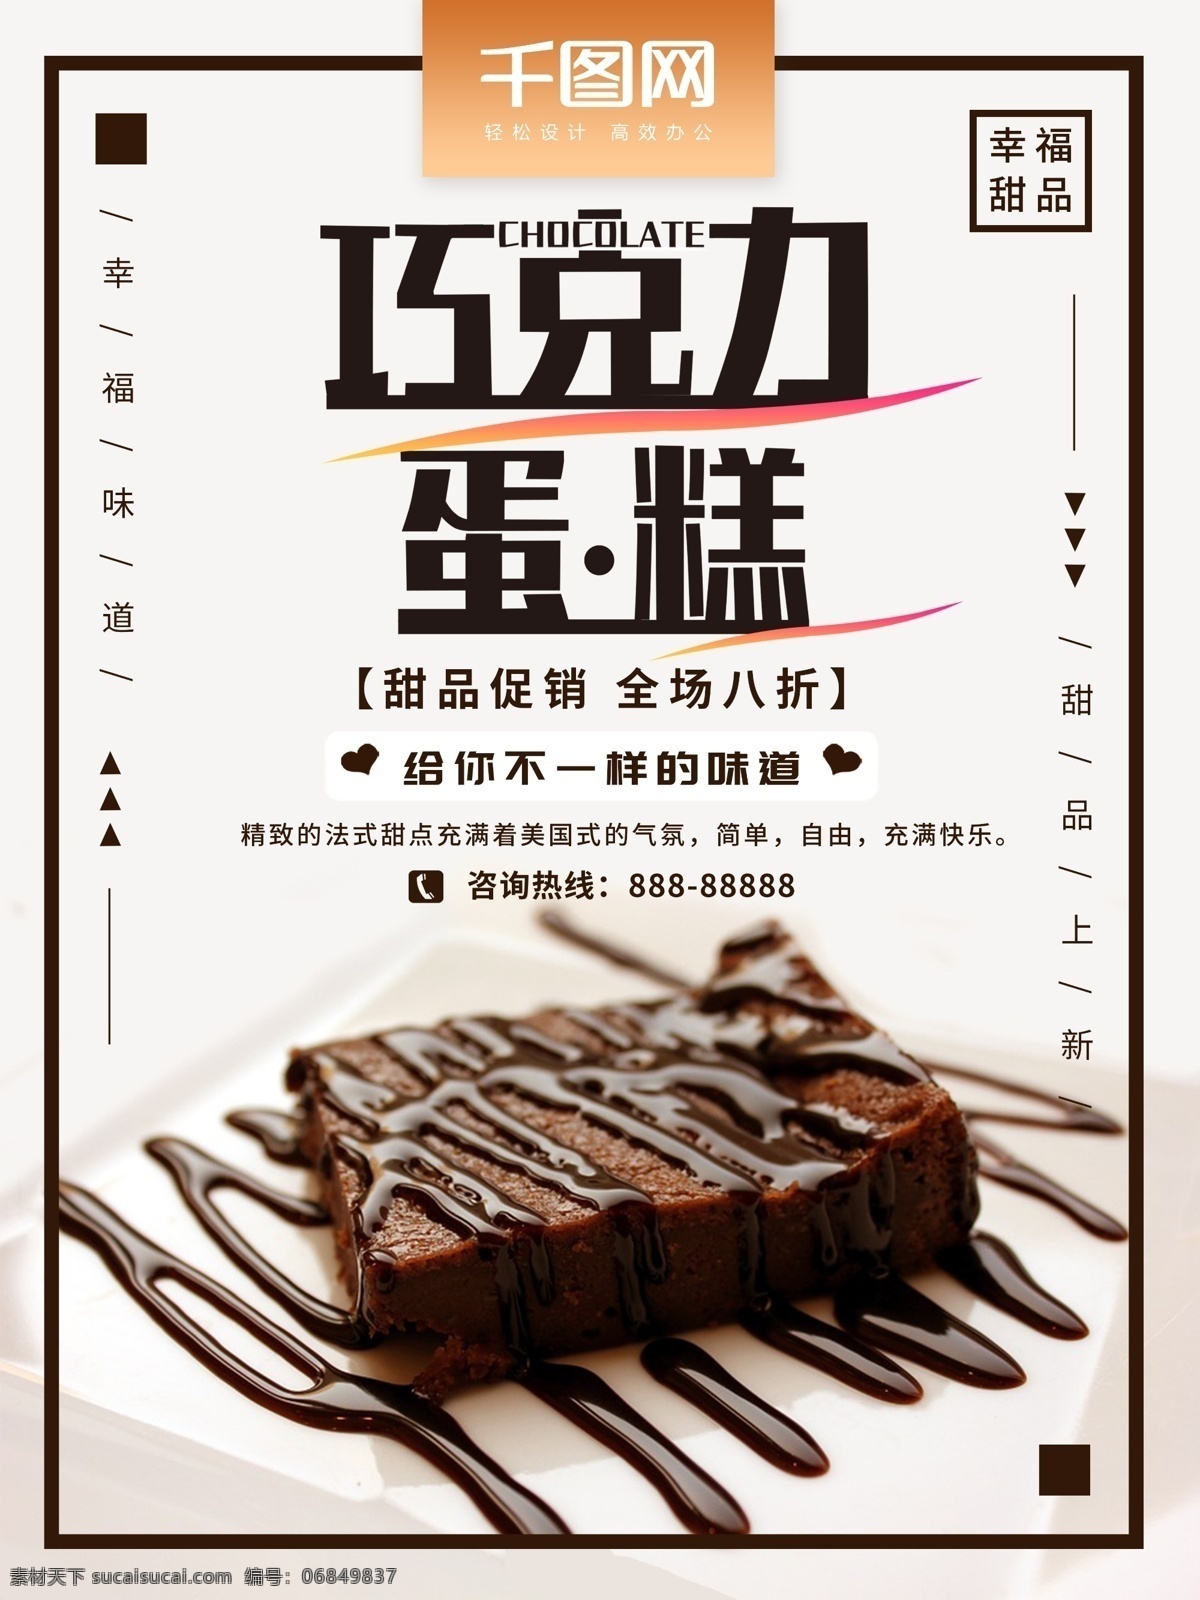 巧克力 甜品 蛋糕 促销 海报 简约 美食海报 美味 巧克力蛋糕 巧克力甜品